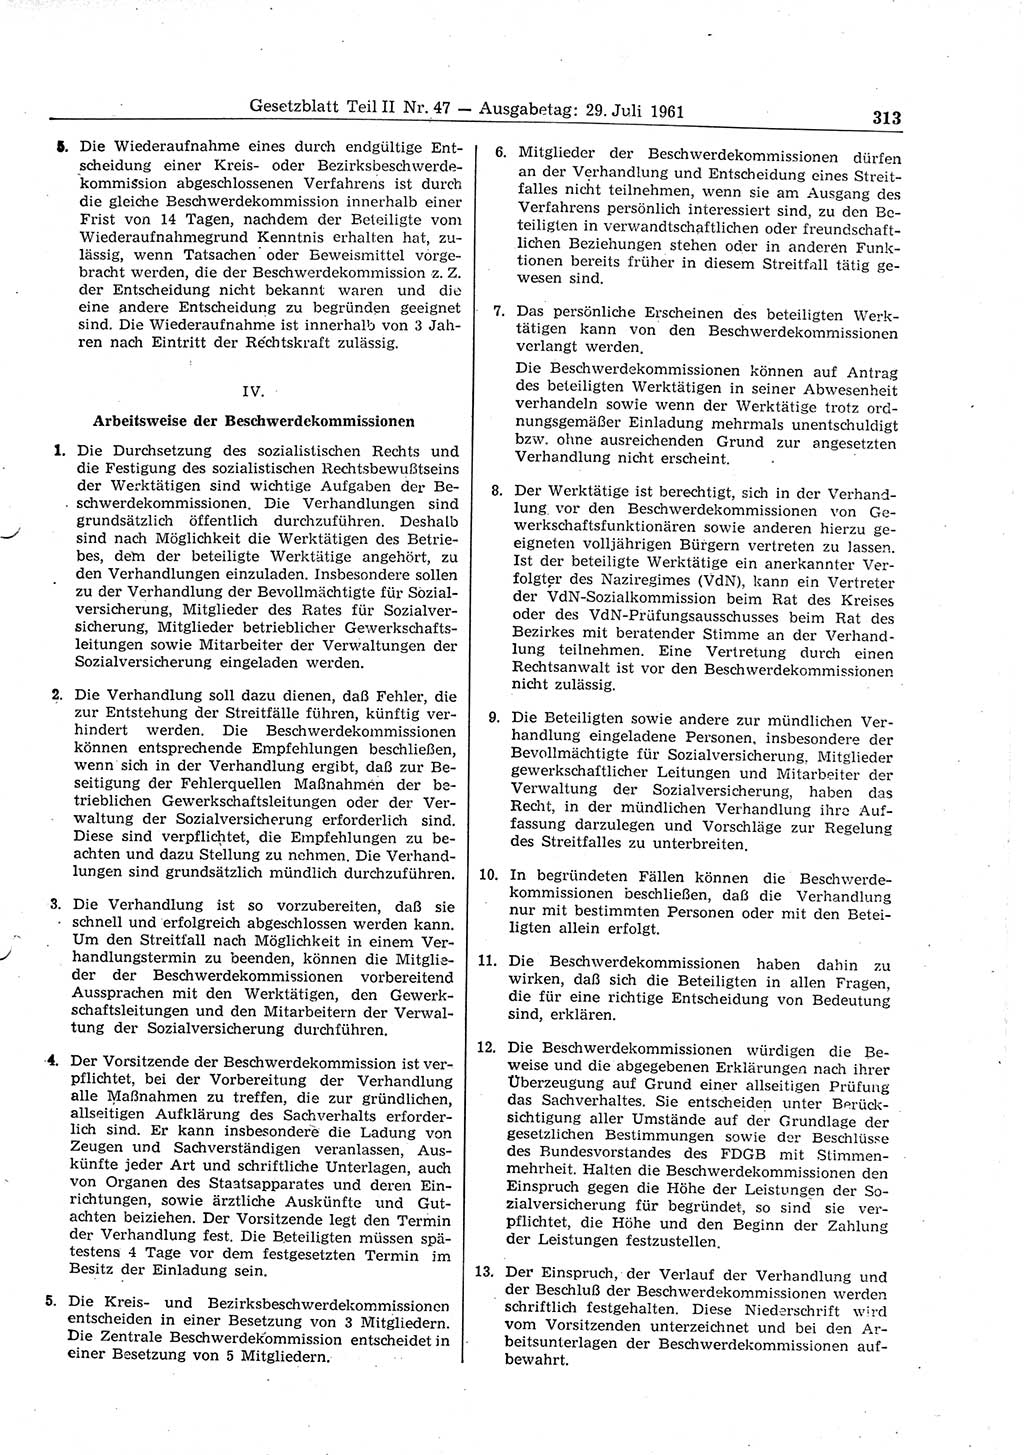 Gesetzblatt (GBl.) der Deutschen Demokratischen Republik (DDR) Teil ⅠⅠ 1961, Seite 313 (GBl. DDR ⅠⅠ 1961, S. 313)